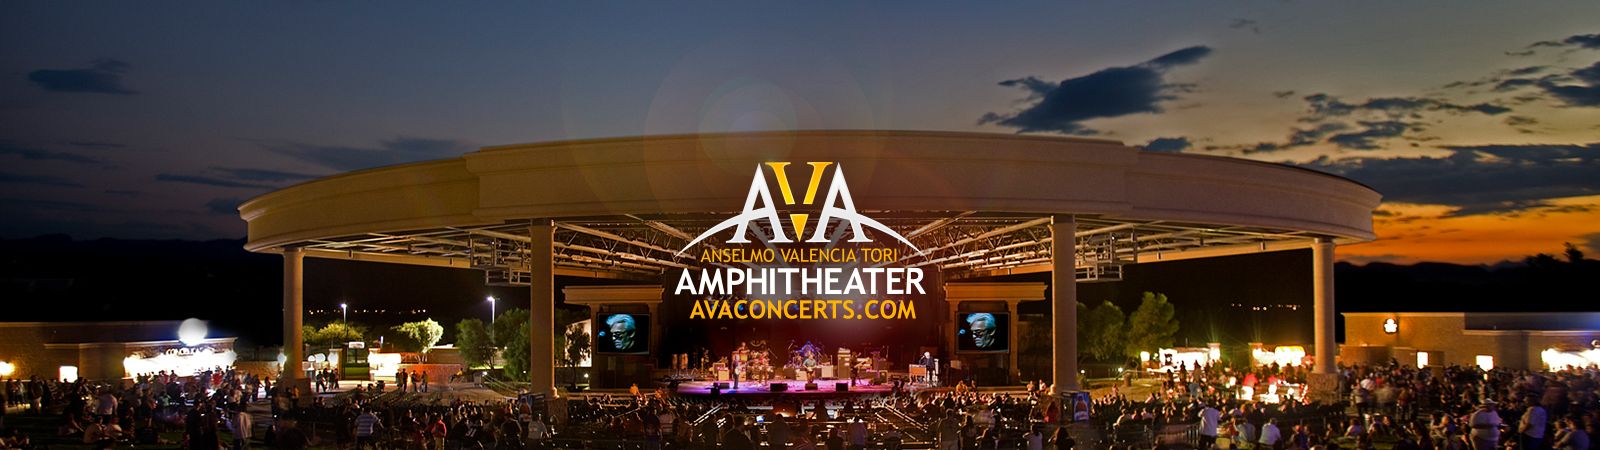 casino del sol ava amphitheater concerts